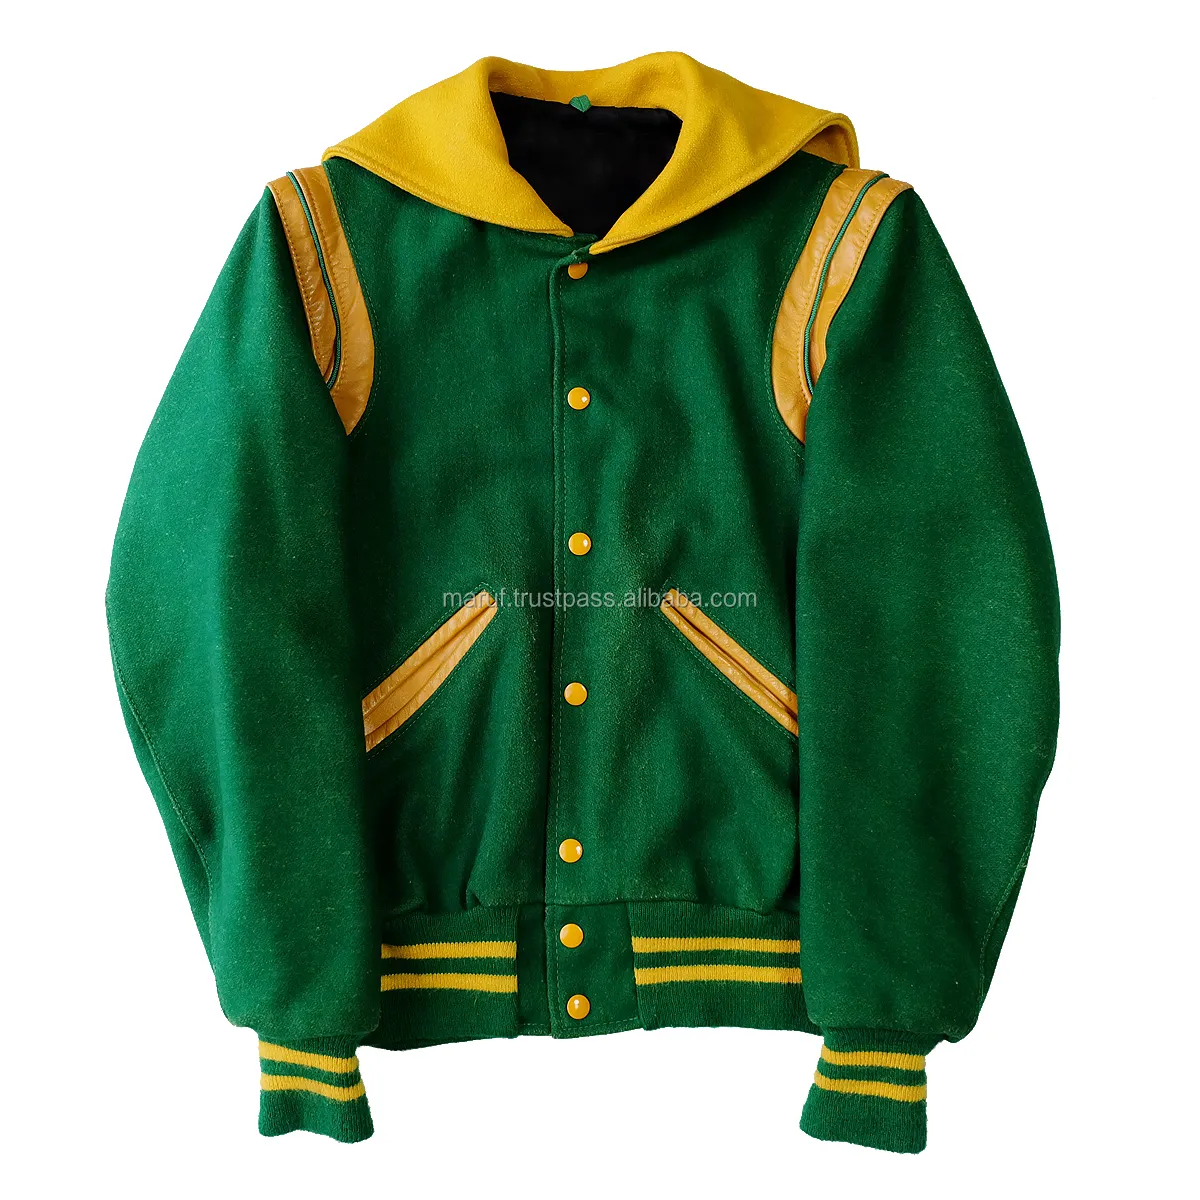 MSWSCVJ02 Maruf Mfg Co, chaqueta de cuerpo de lana de color amarillo, verde, hombro descubierto, para Universidad